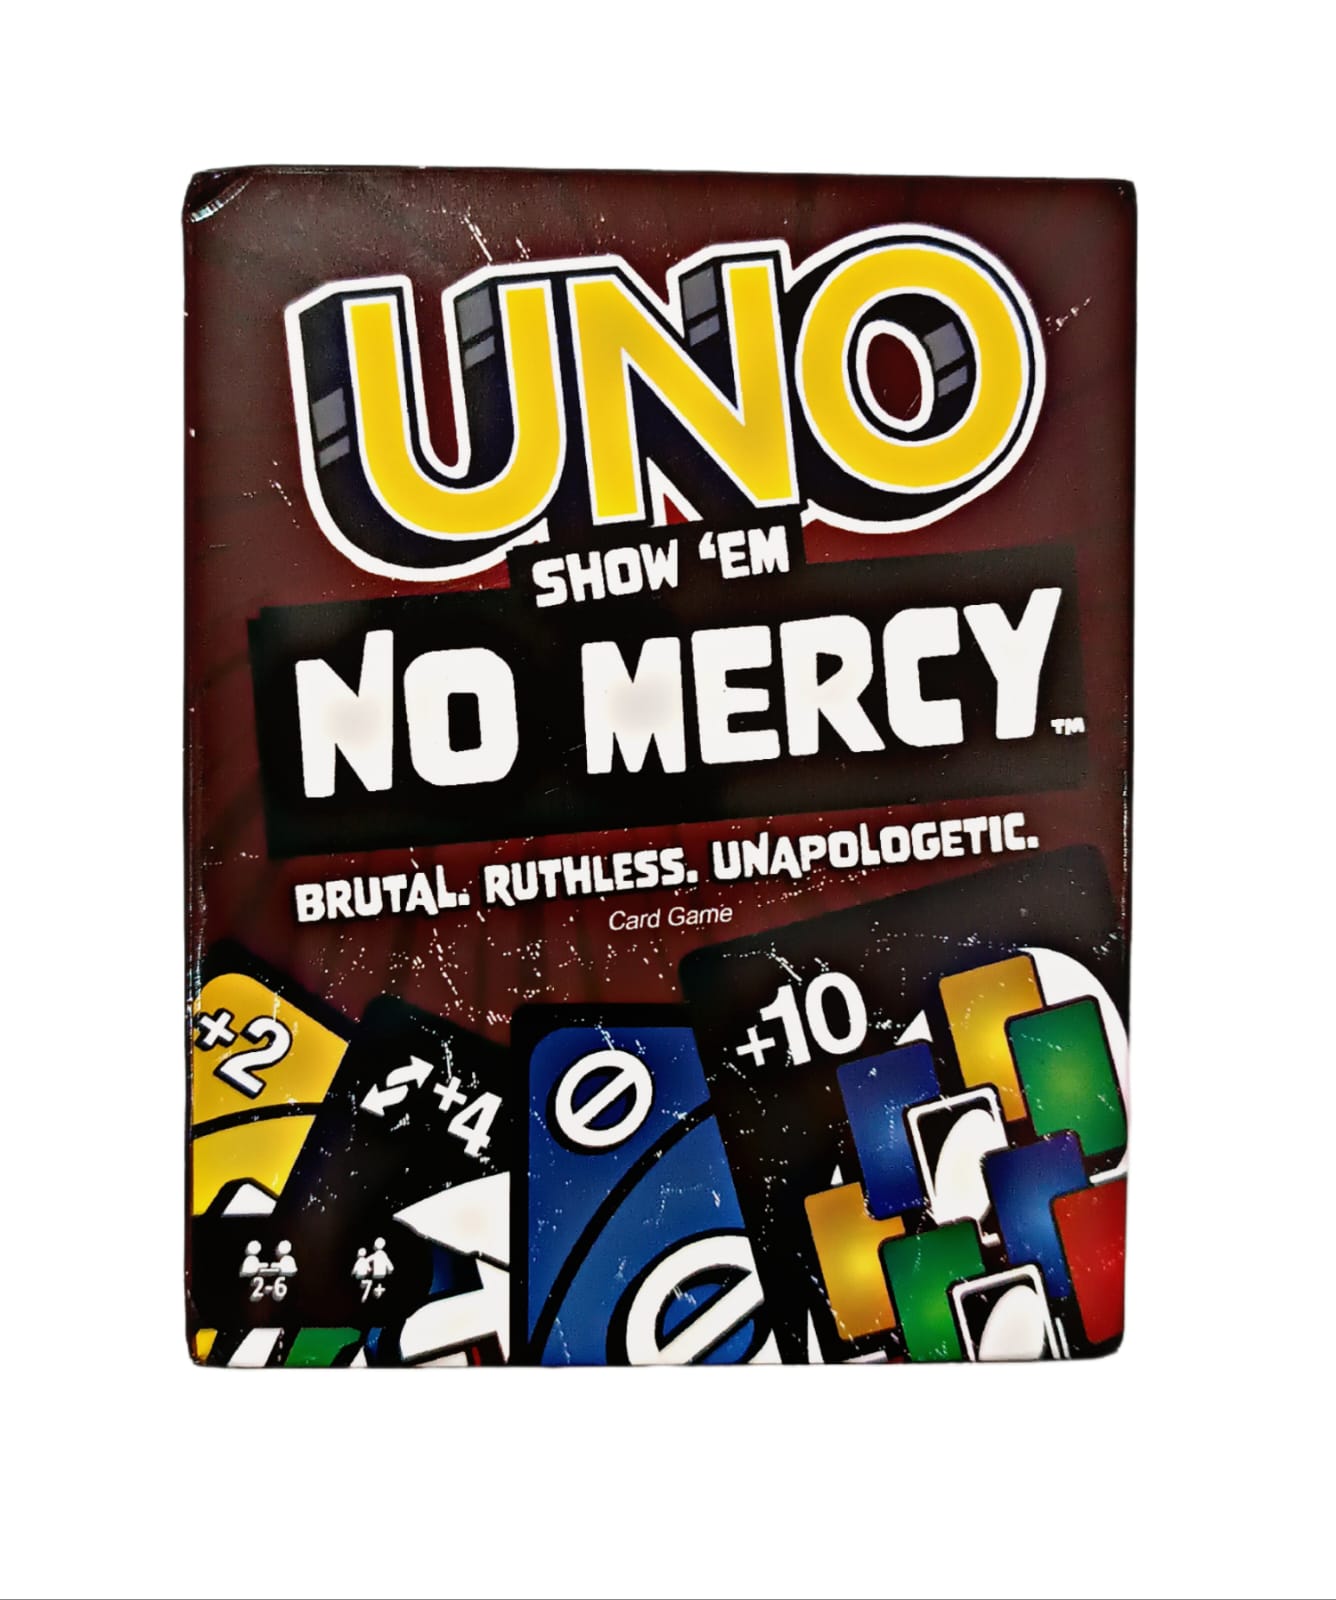 UNO No Mercy